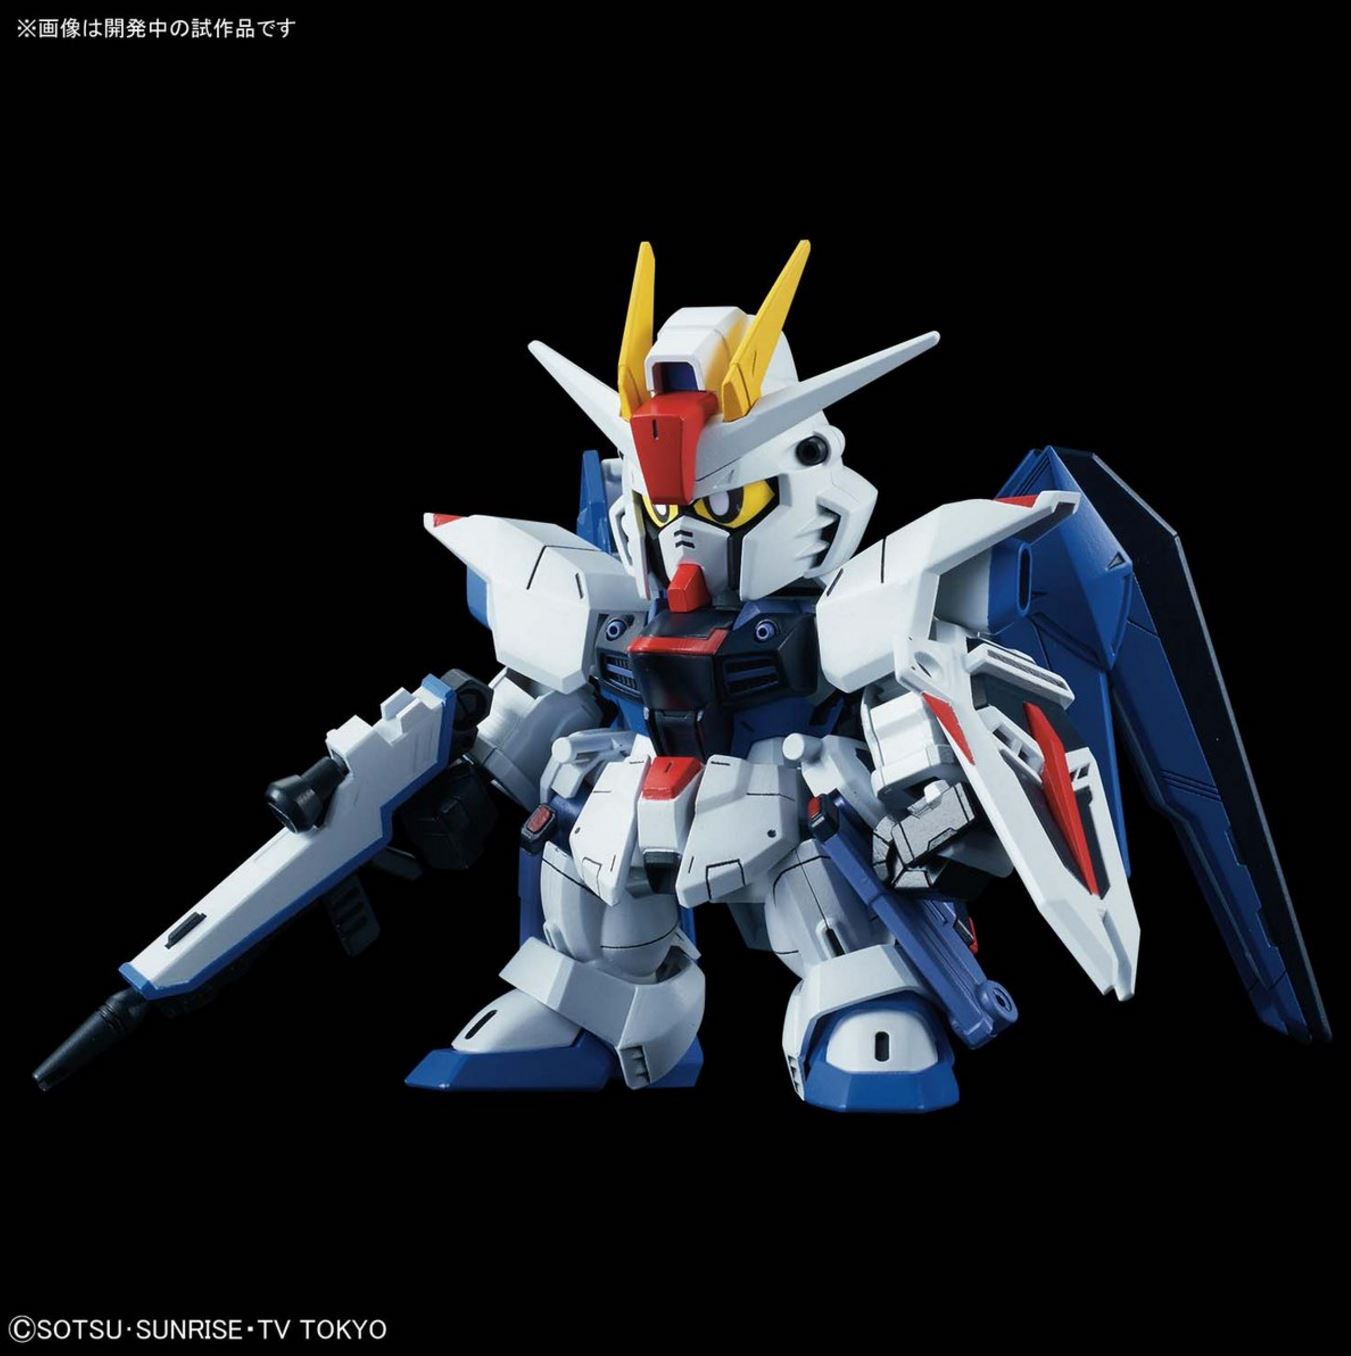 SD Gundam Cross Silhouette - Freedom Gundam